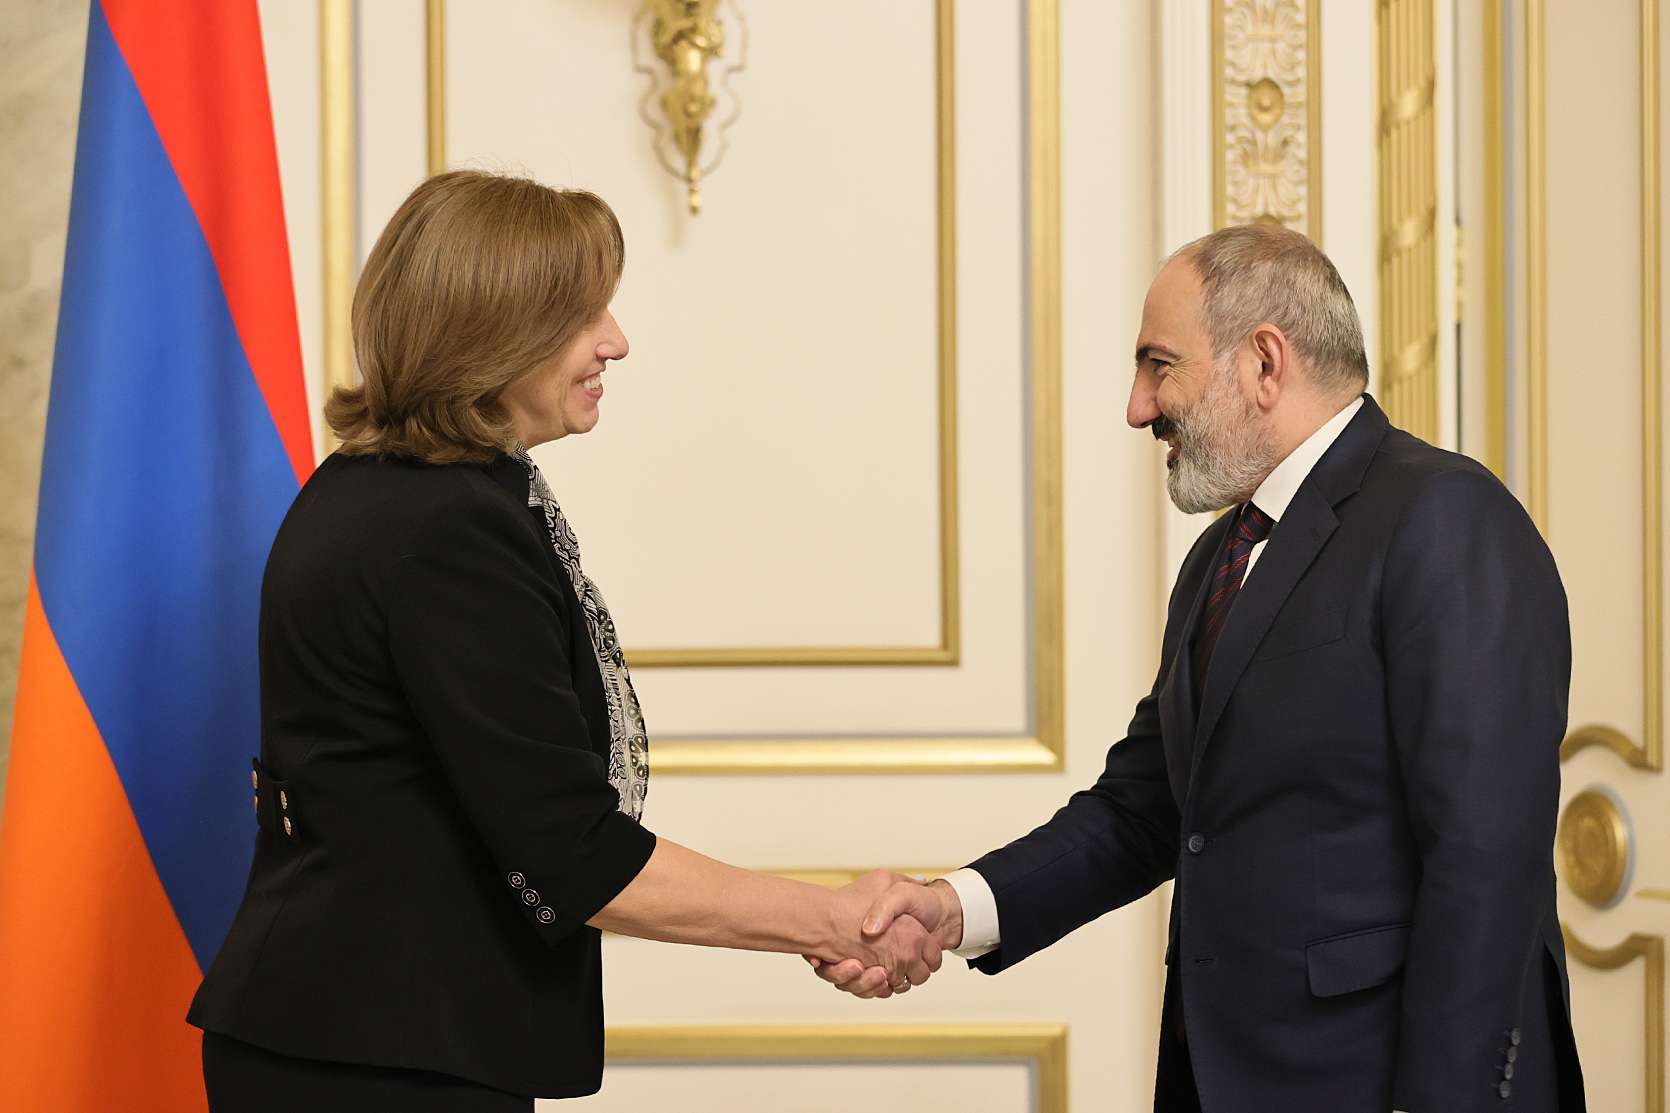 Премьер-министр Пашинян принял новоназначенного посла США в Армении Кристину Куинн